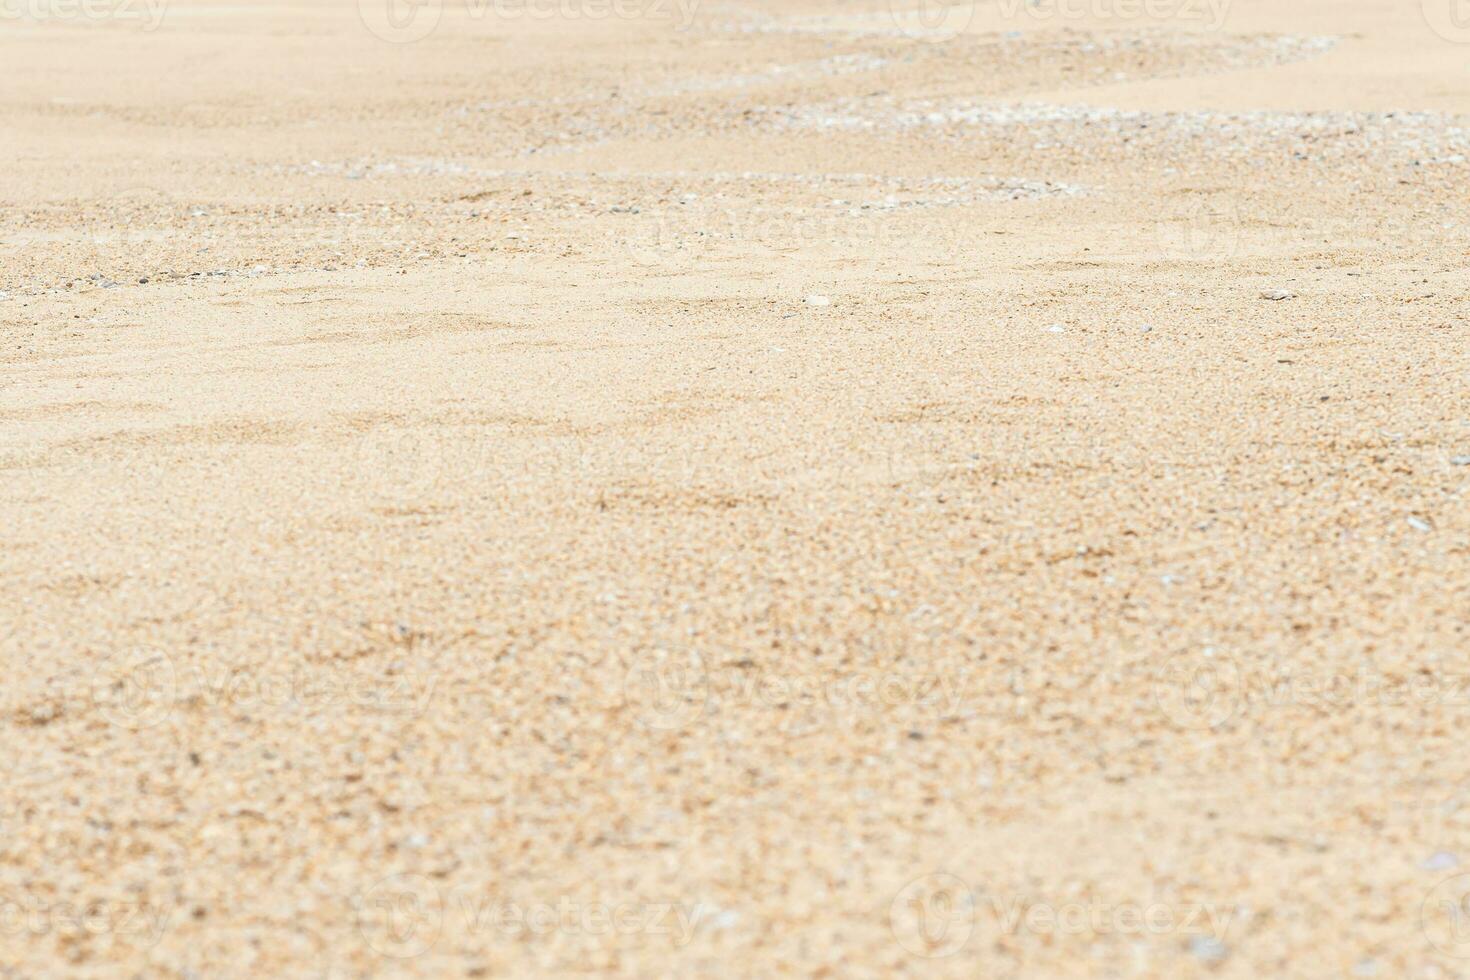 seletivo foco em de praia areia, paisagem, papel de parede, ninguém, não pessoas, fundo foto